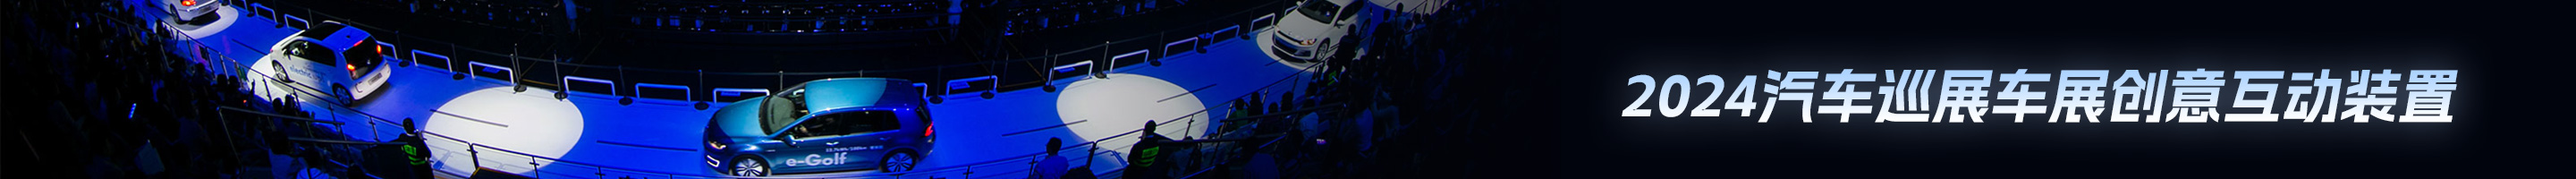 2023广州国际车展创意互动装置